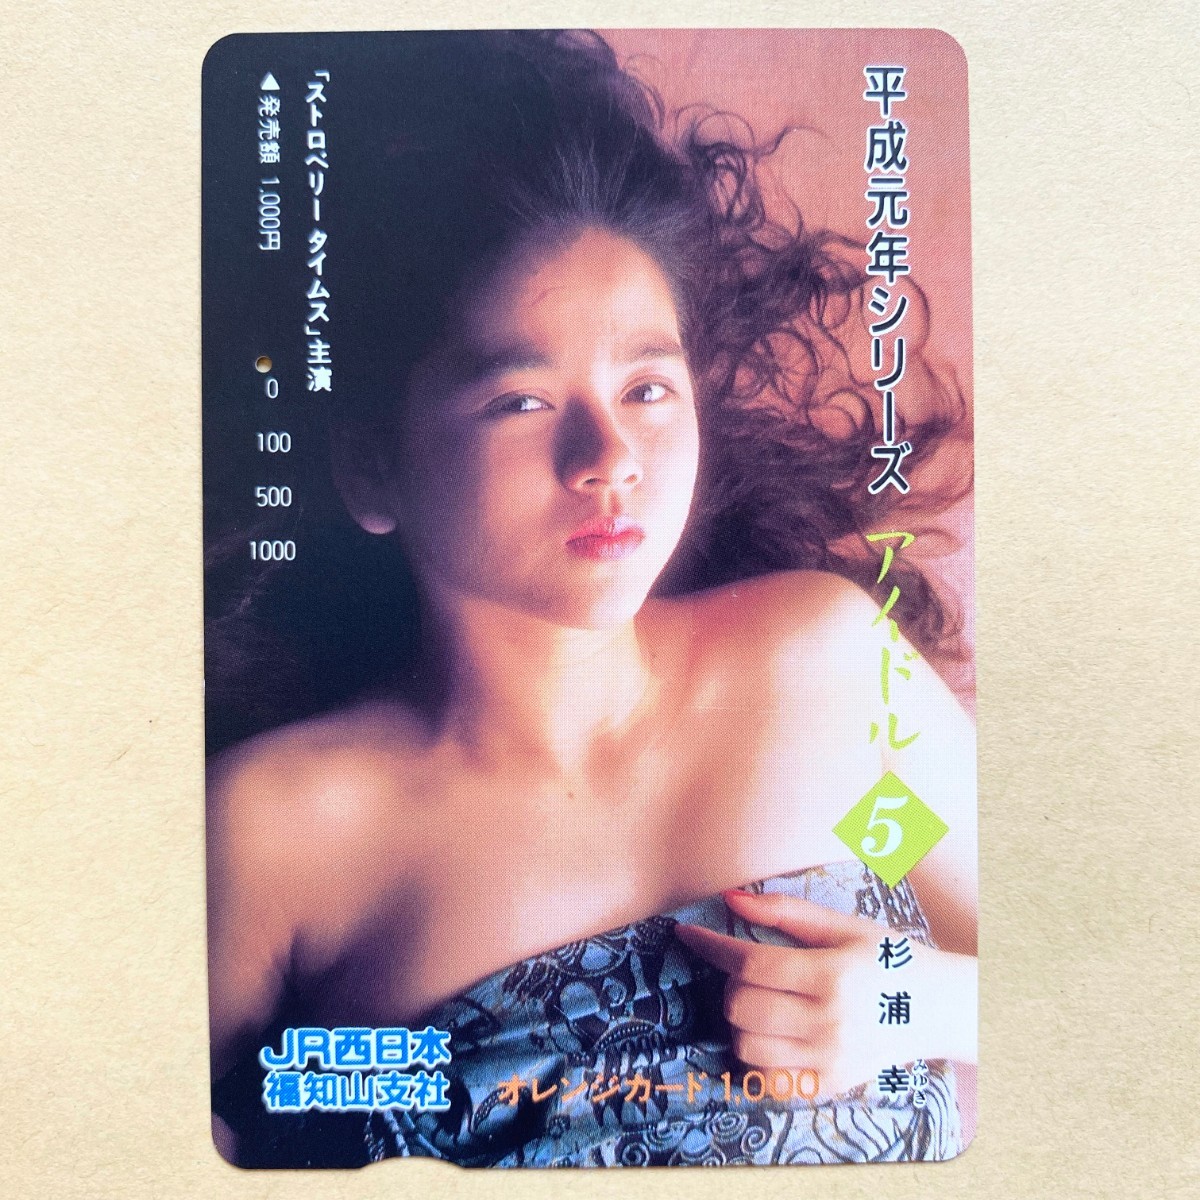 【使用済】 オレンジカード JR西日本 杉浦幸 平成元年シリーズ アイドル⑤_画像1